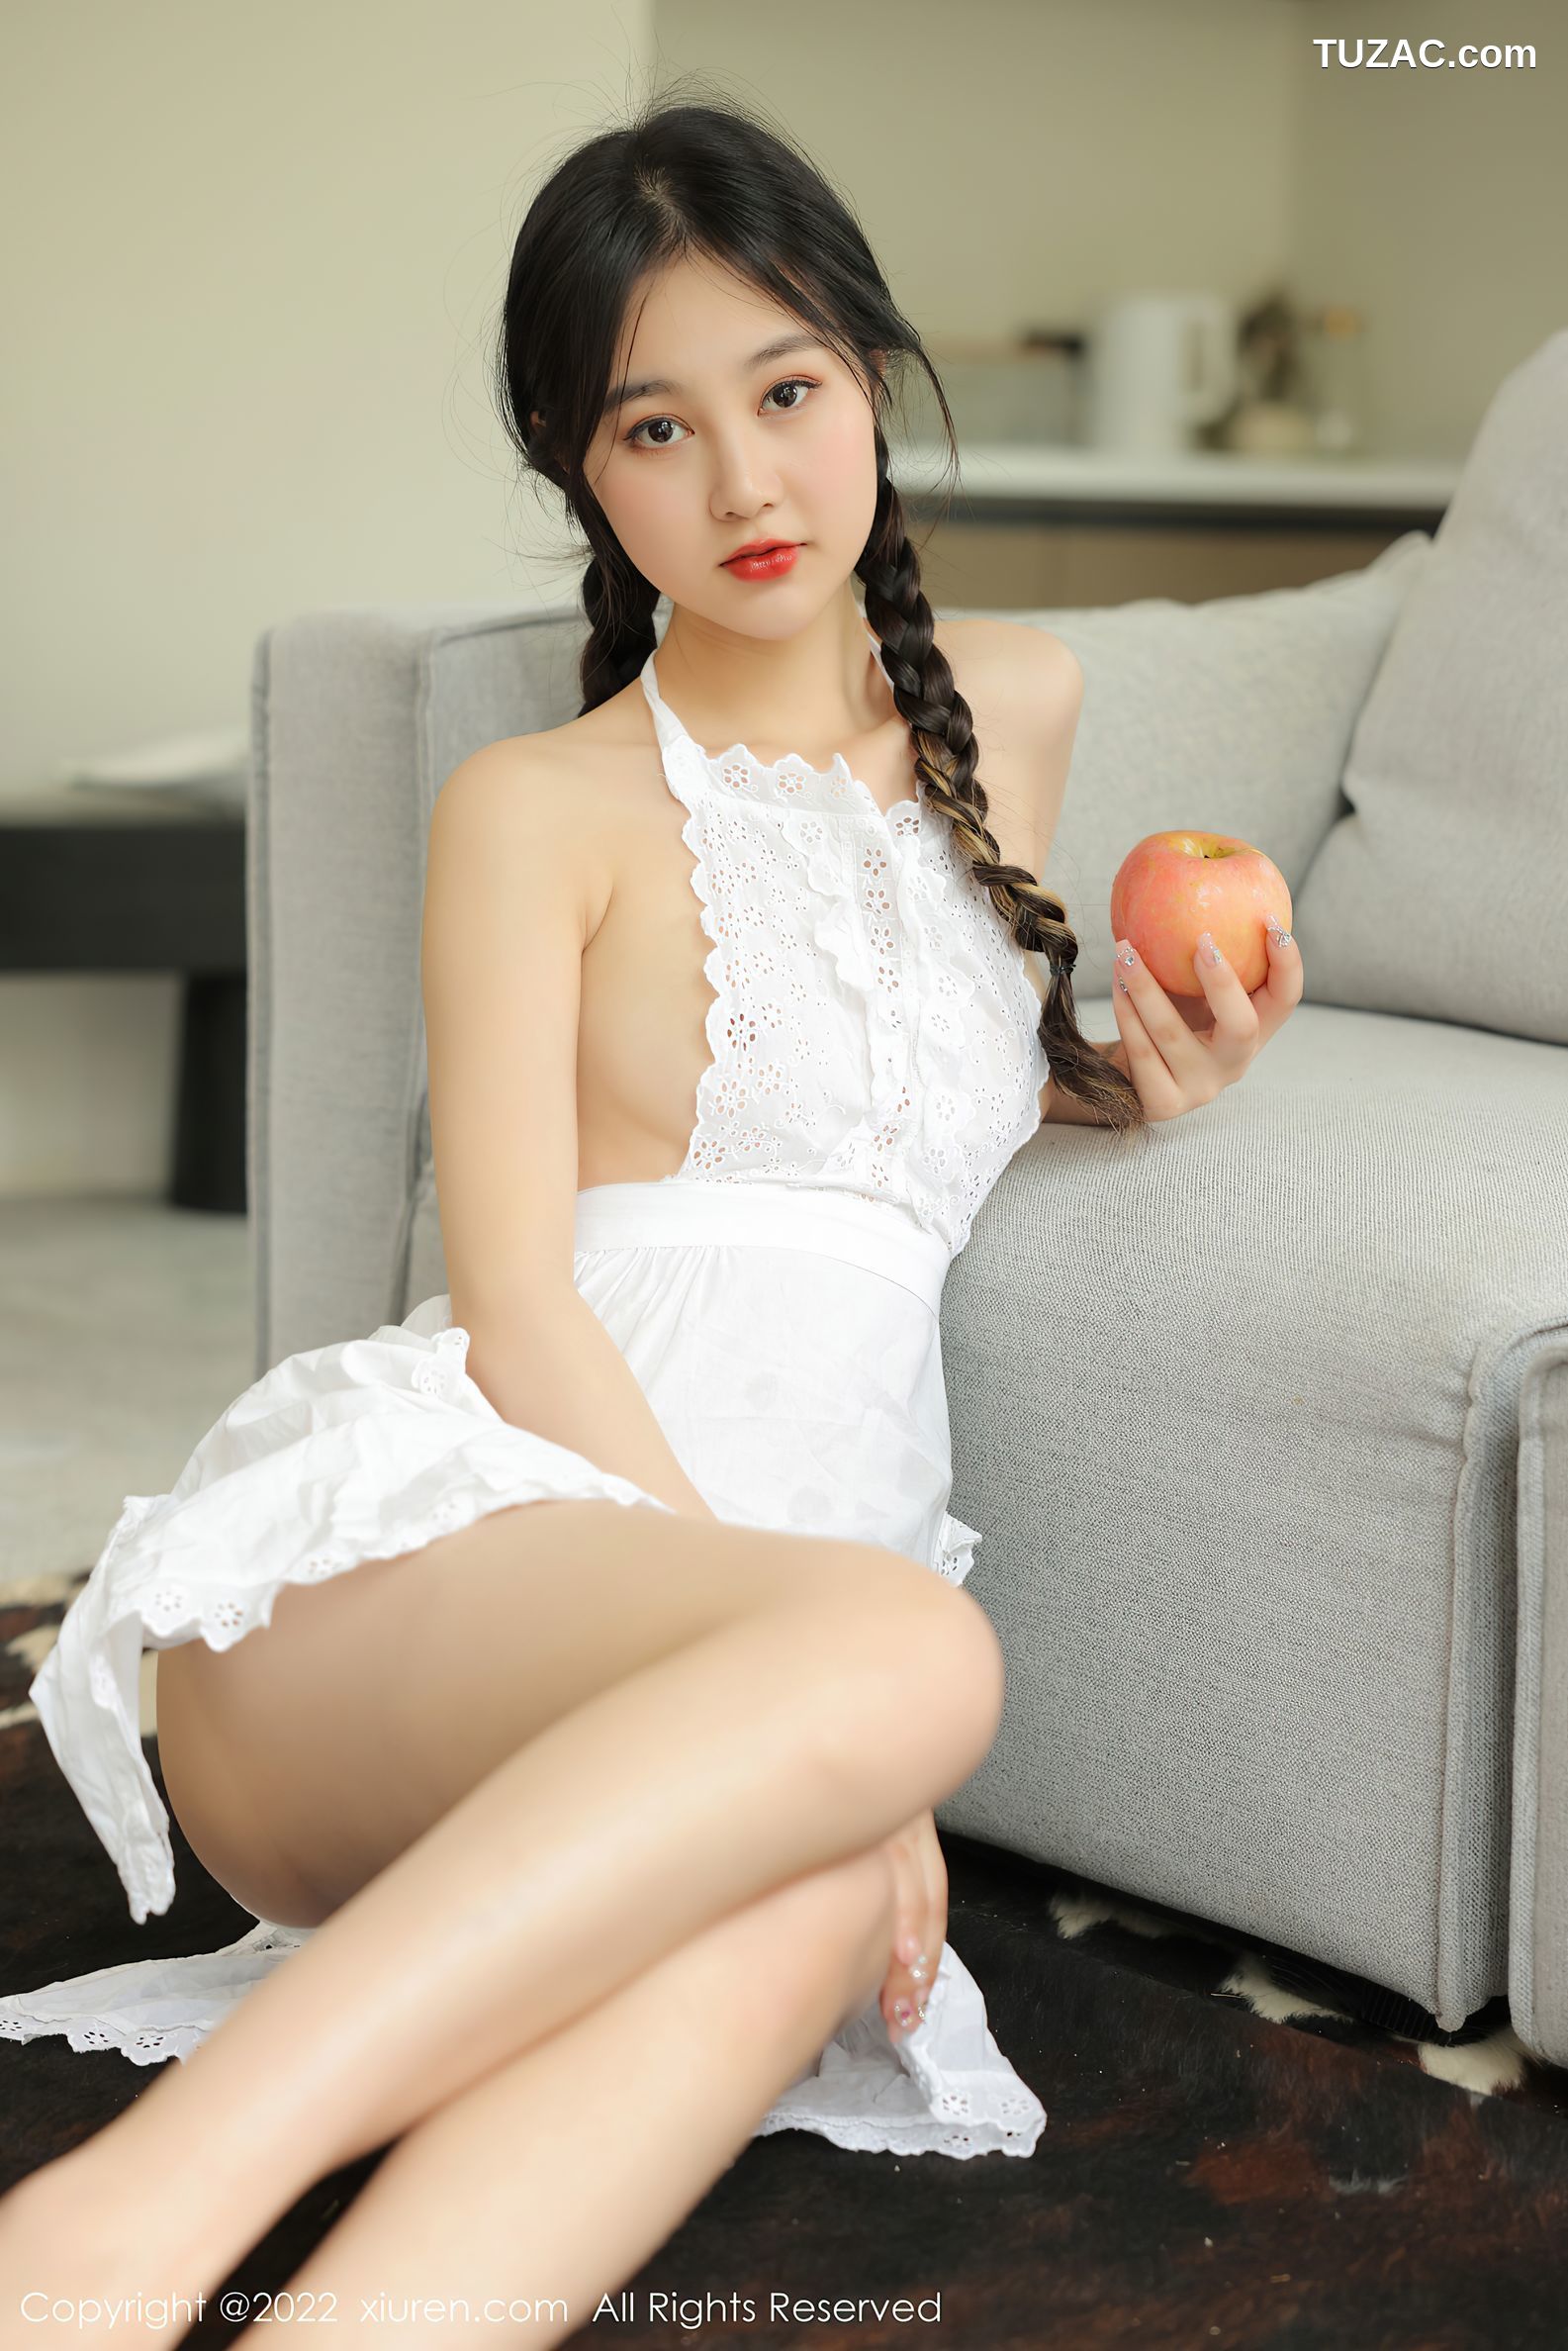 XiuRen秀人网-4992-谢晚晚-居家厨娘主题性感白色真空围裙-2022.05.11